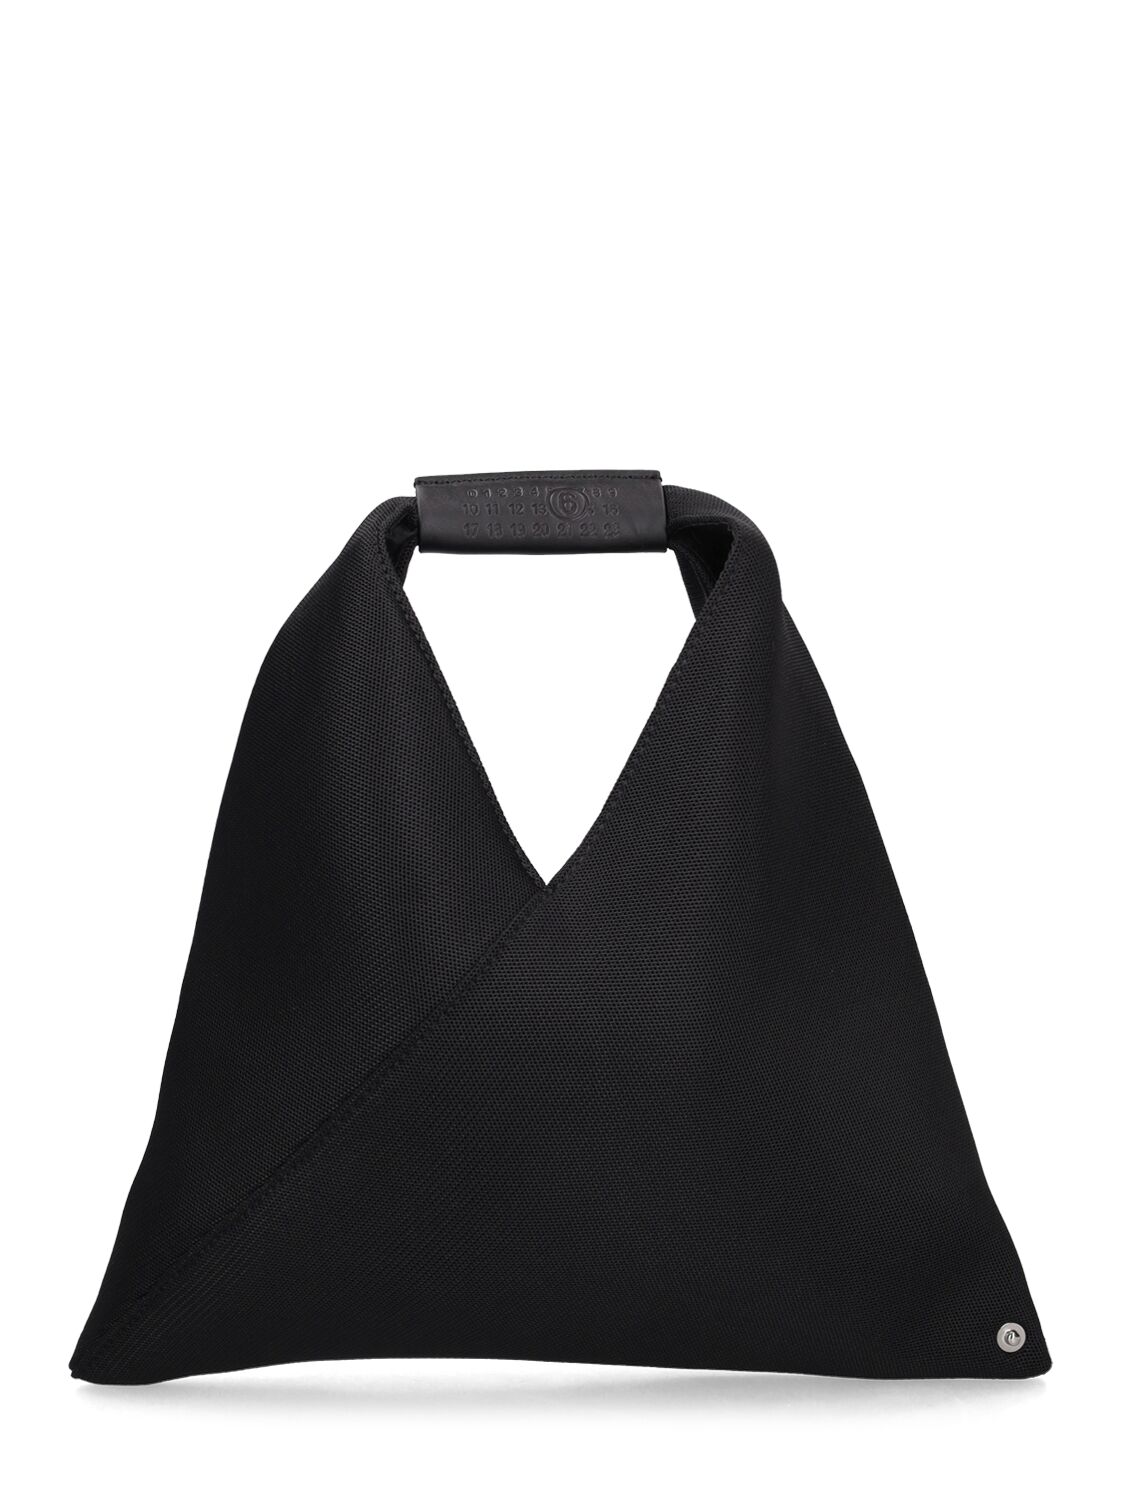 Mm6 Maison Margiela Kids' Mini Japanese Handbag In Black